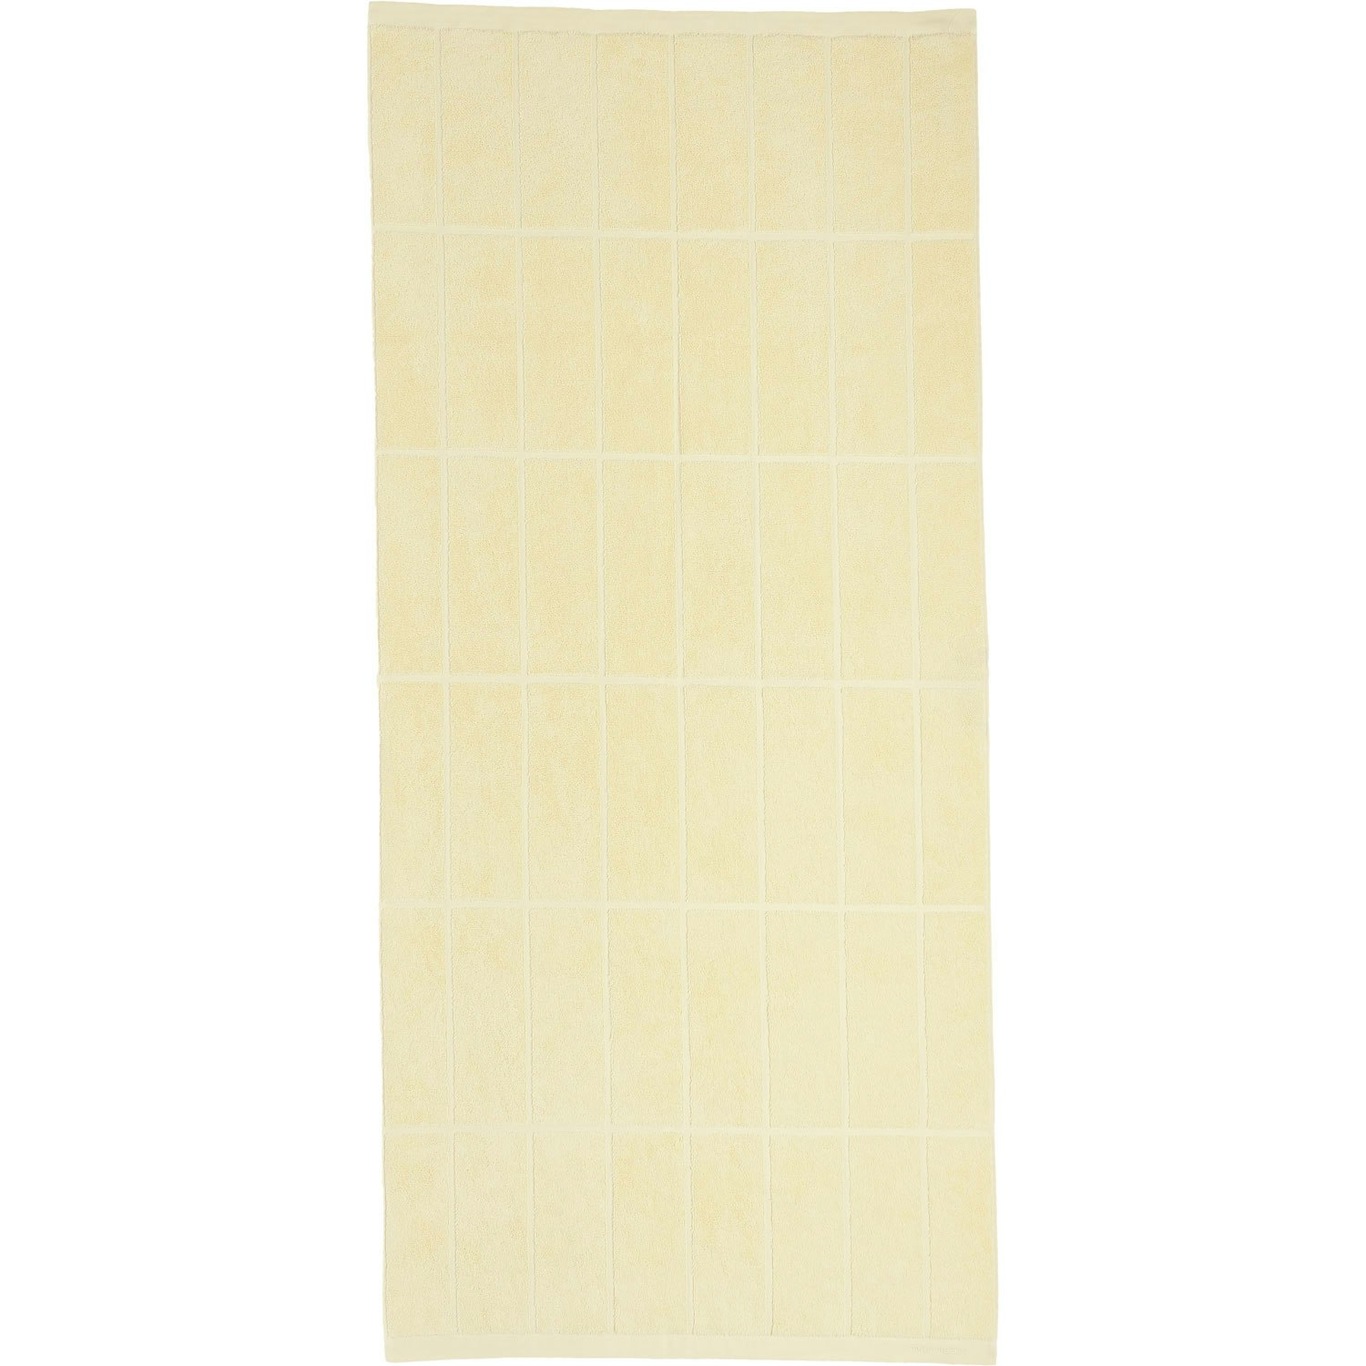 Tiiliskivi Handtuch 70x150 cm, Butter Yellow